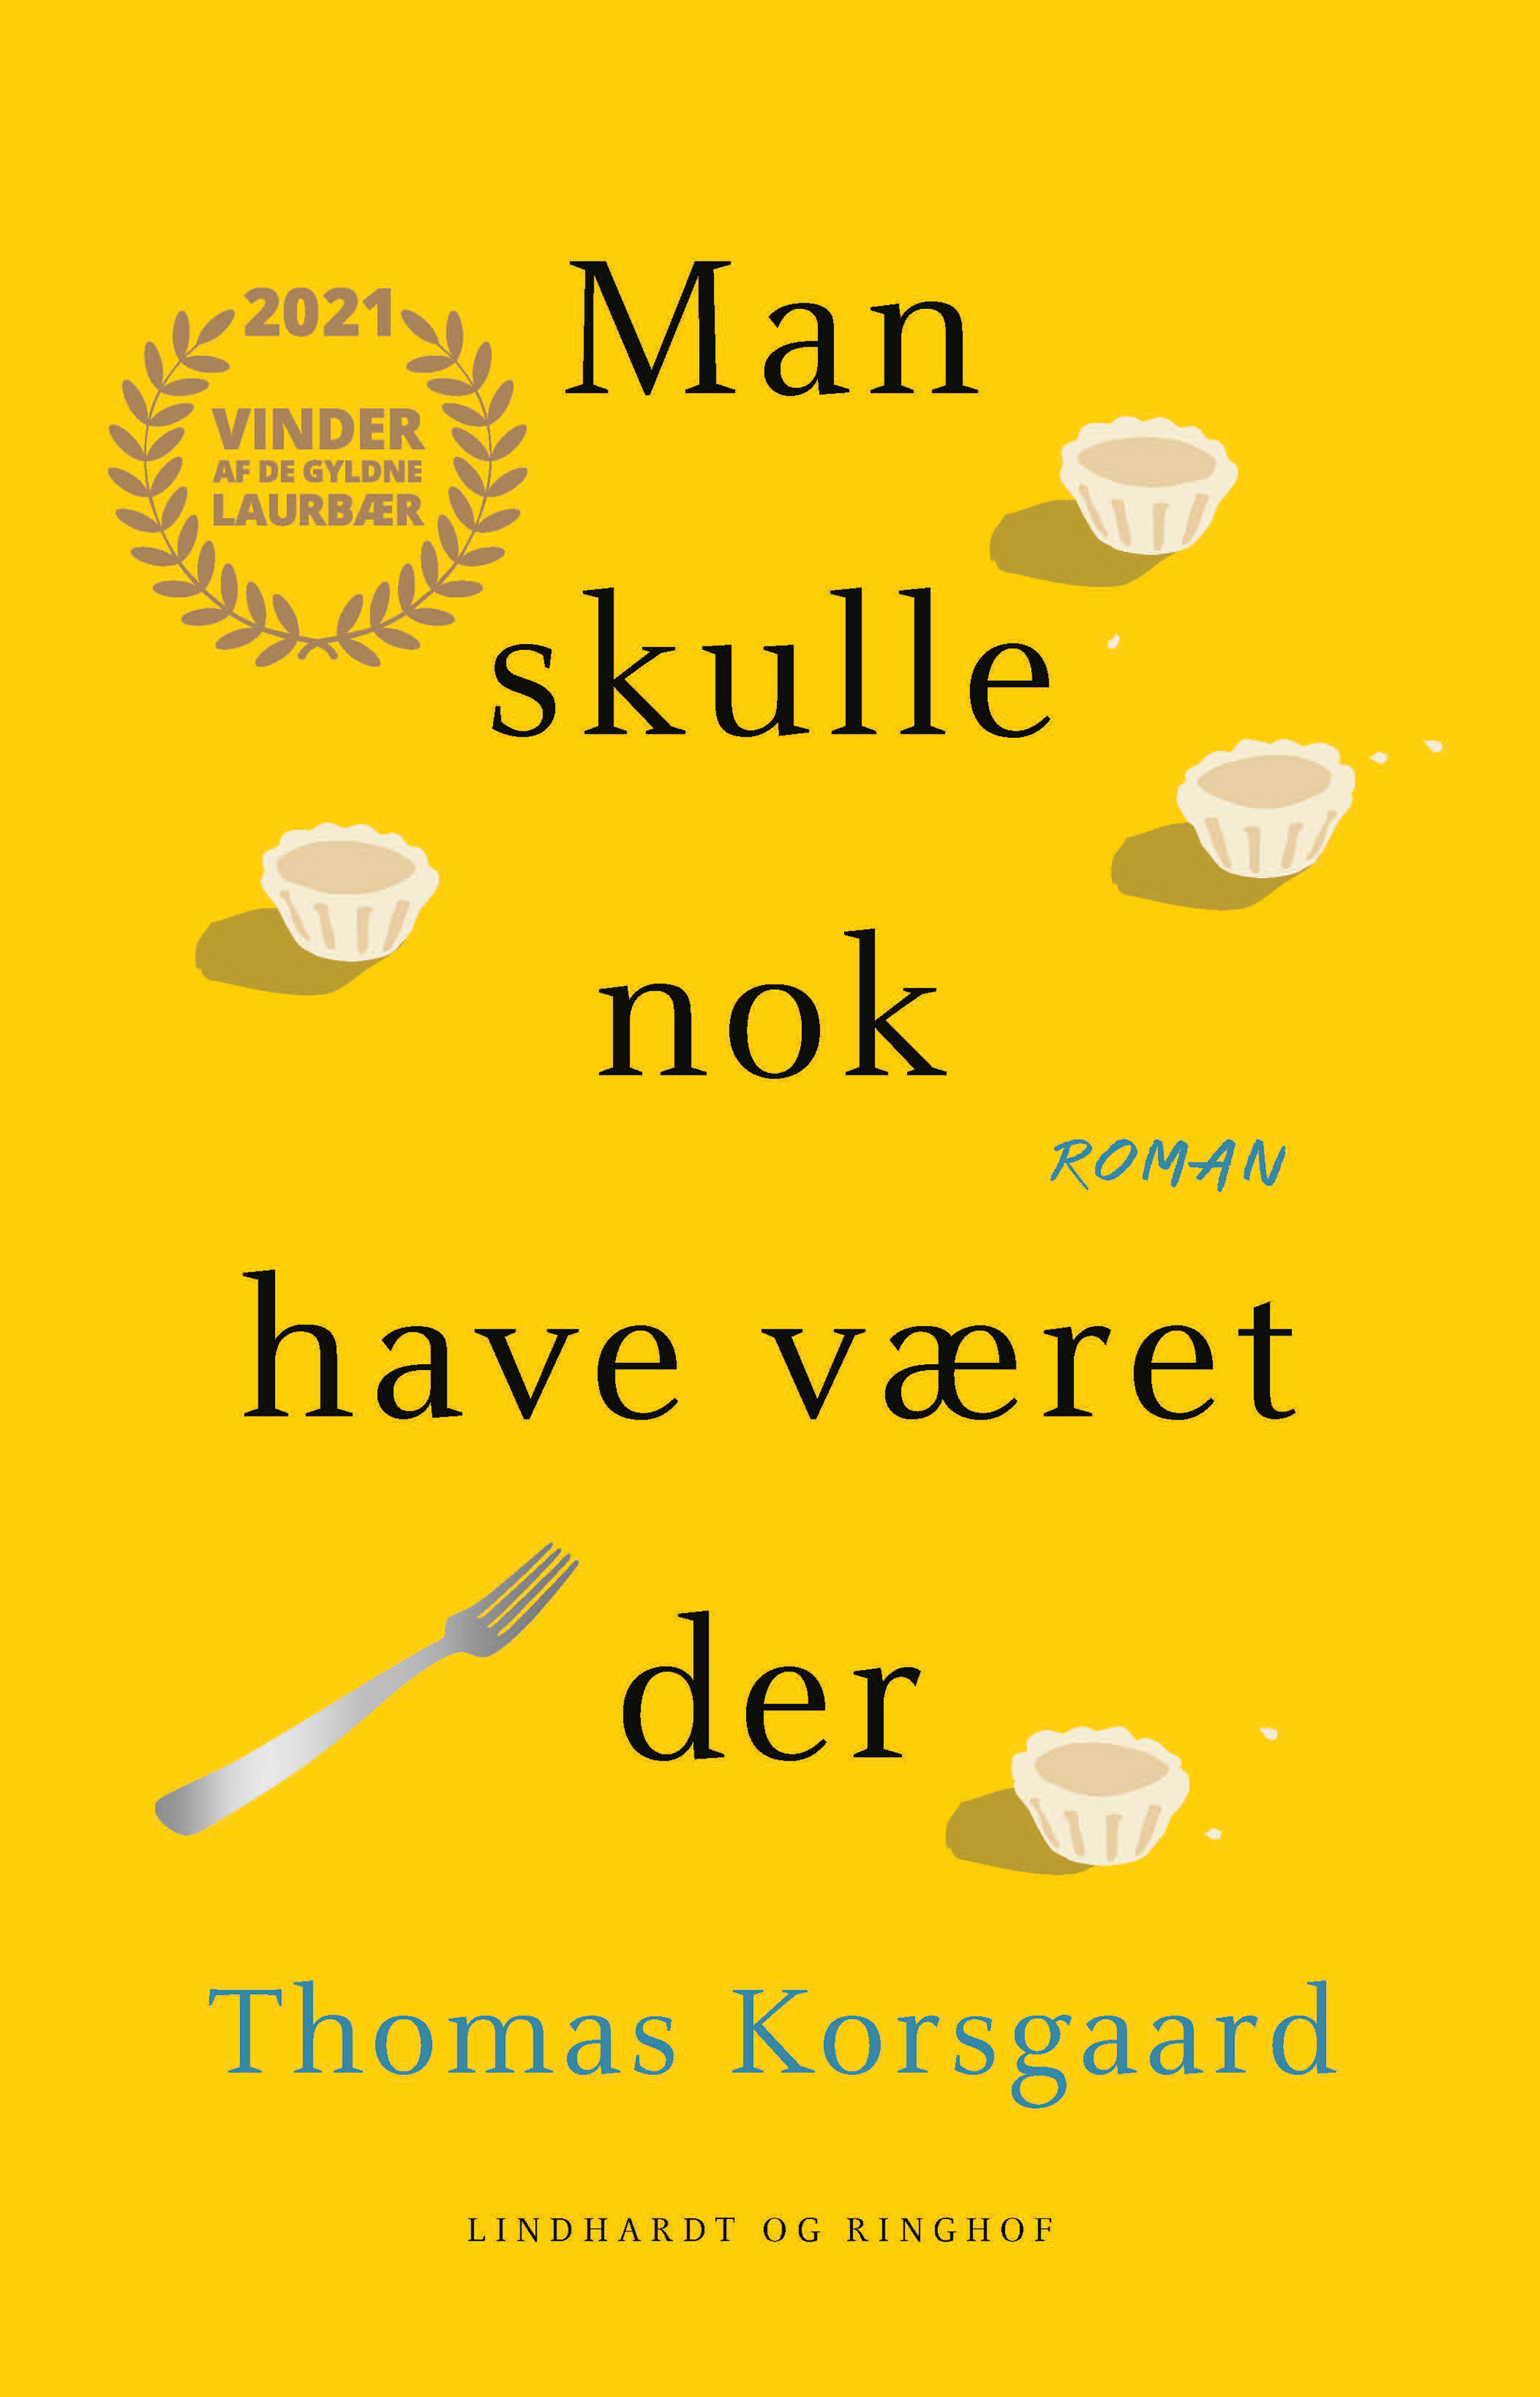 Bemyndige Ellers Det er billigt Se årets 25 bedste bøger, som du skal have med på ferie - ALT.dk